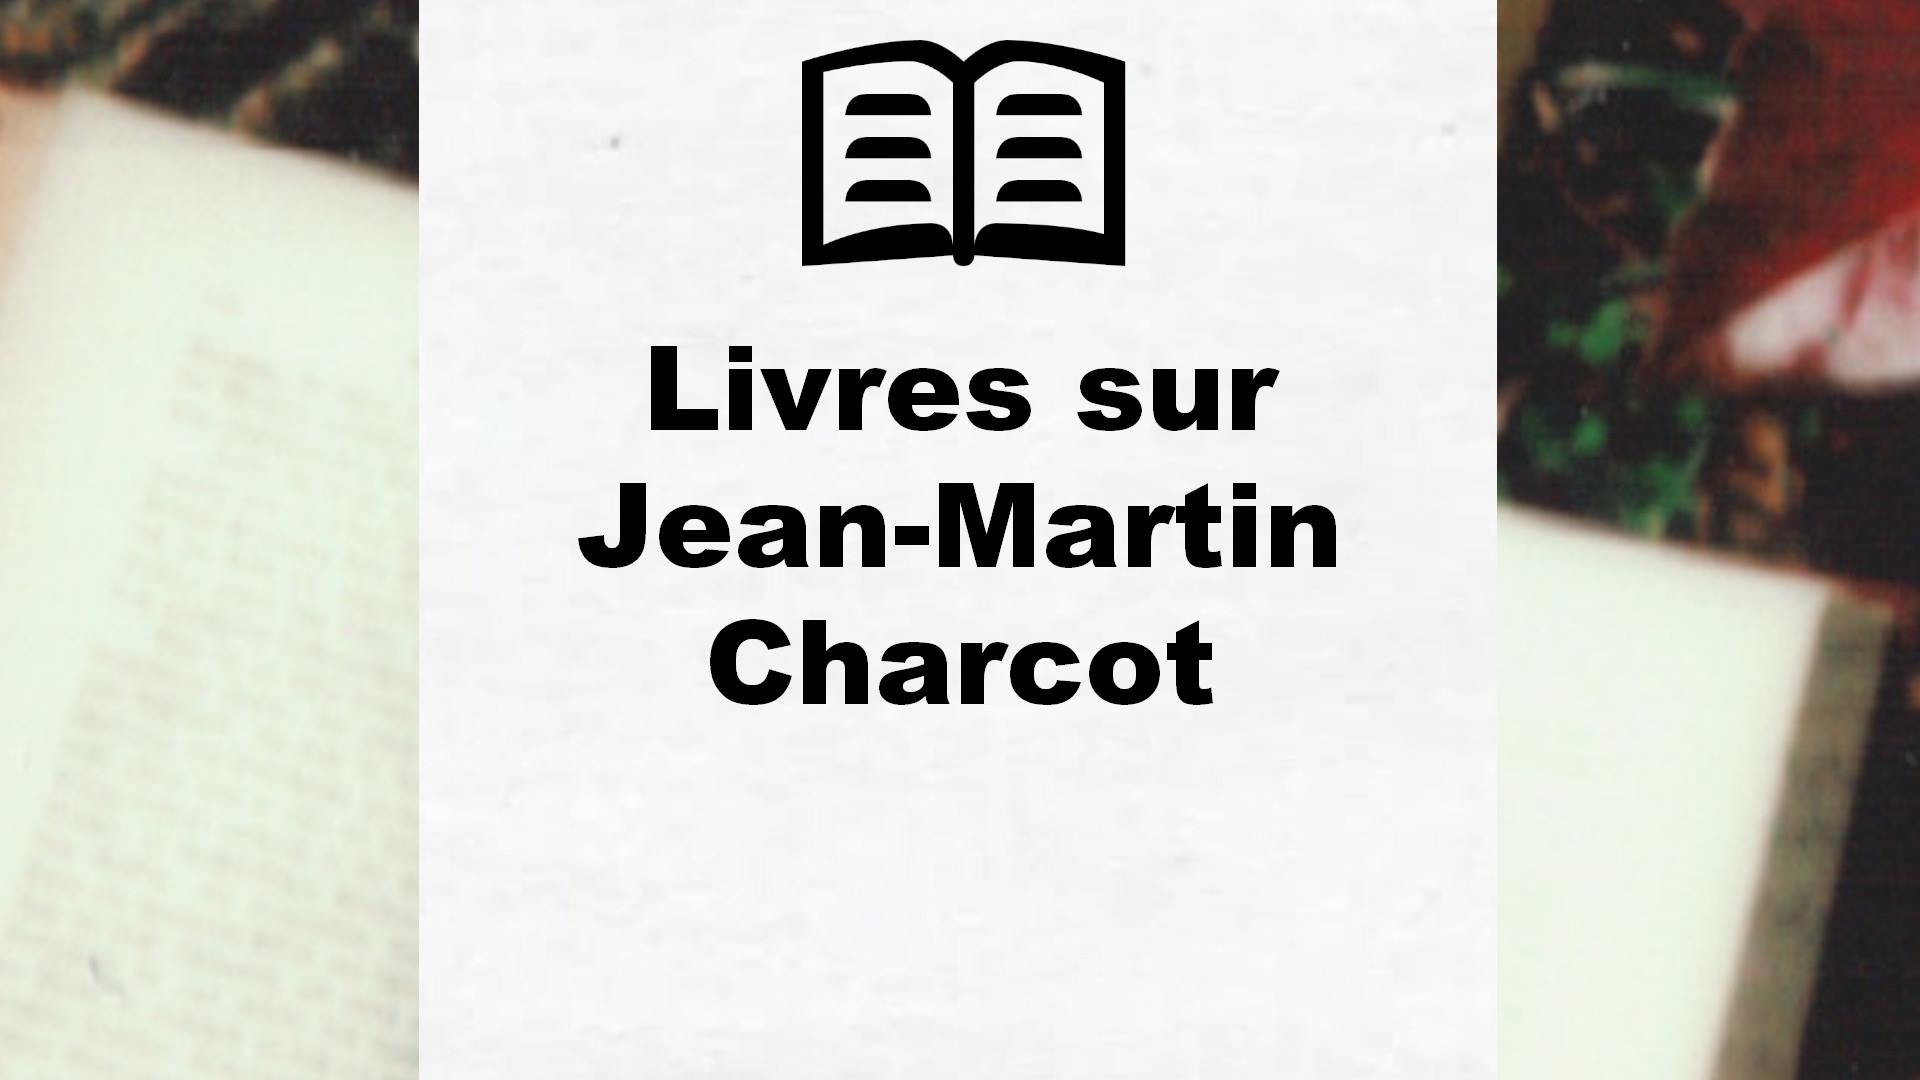 Livres sur Jean-Martin Charcot